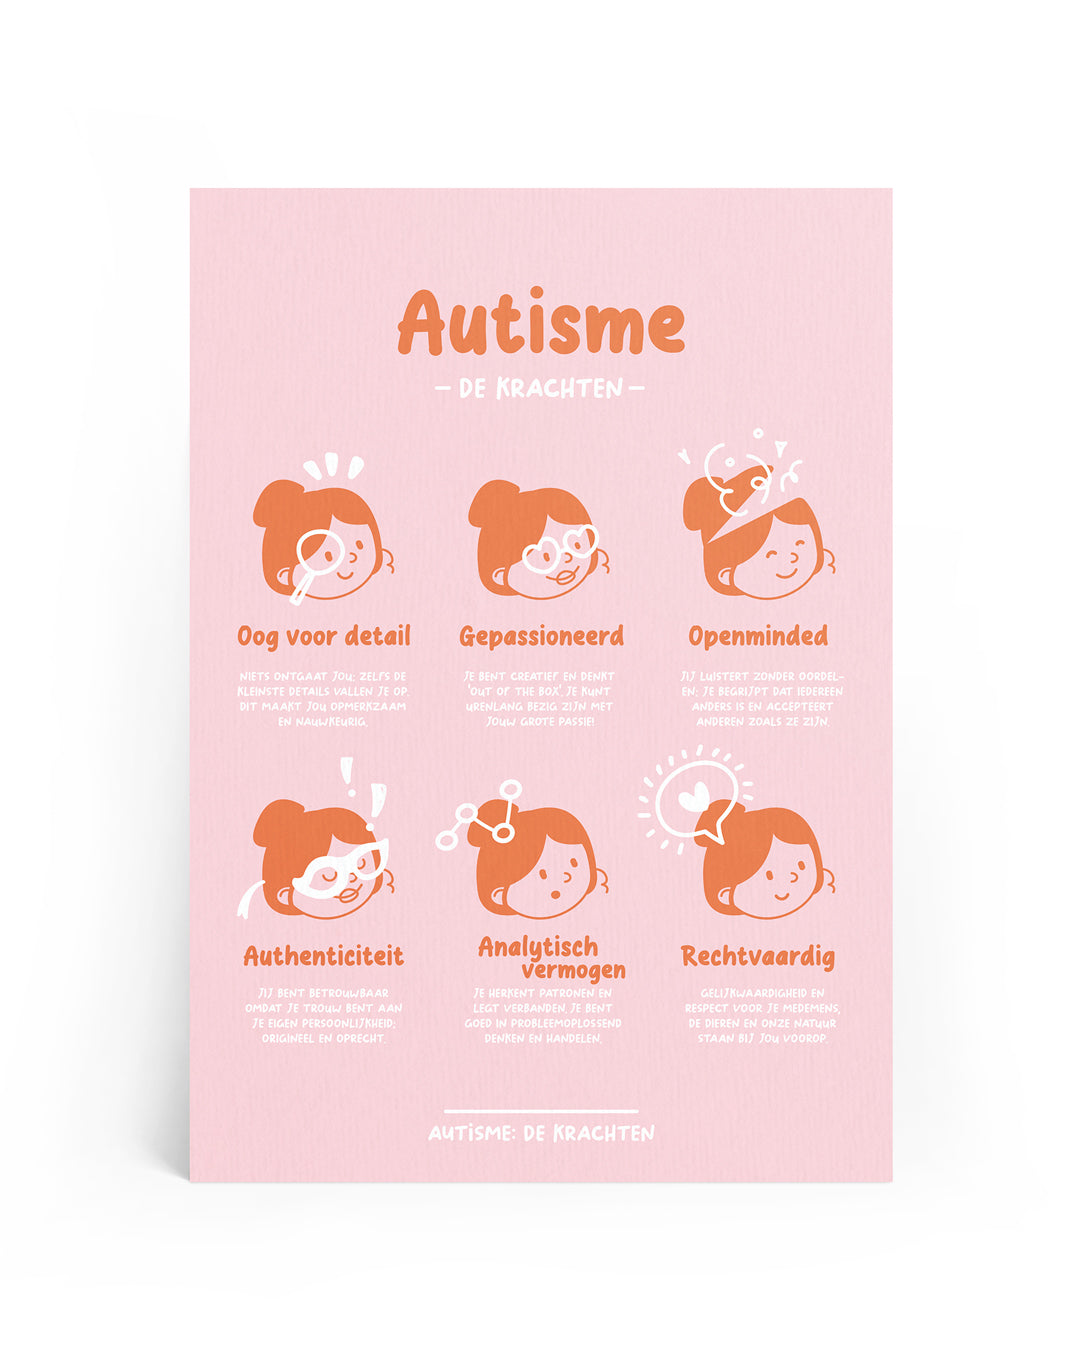 Autisme - A4 Print: de Krachten